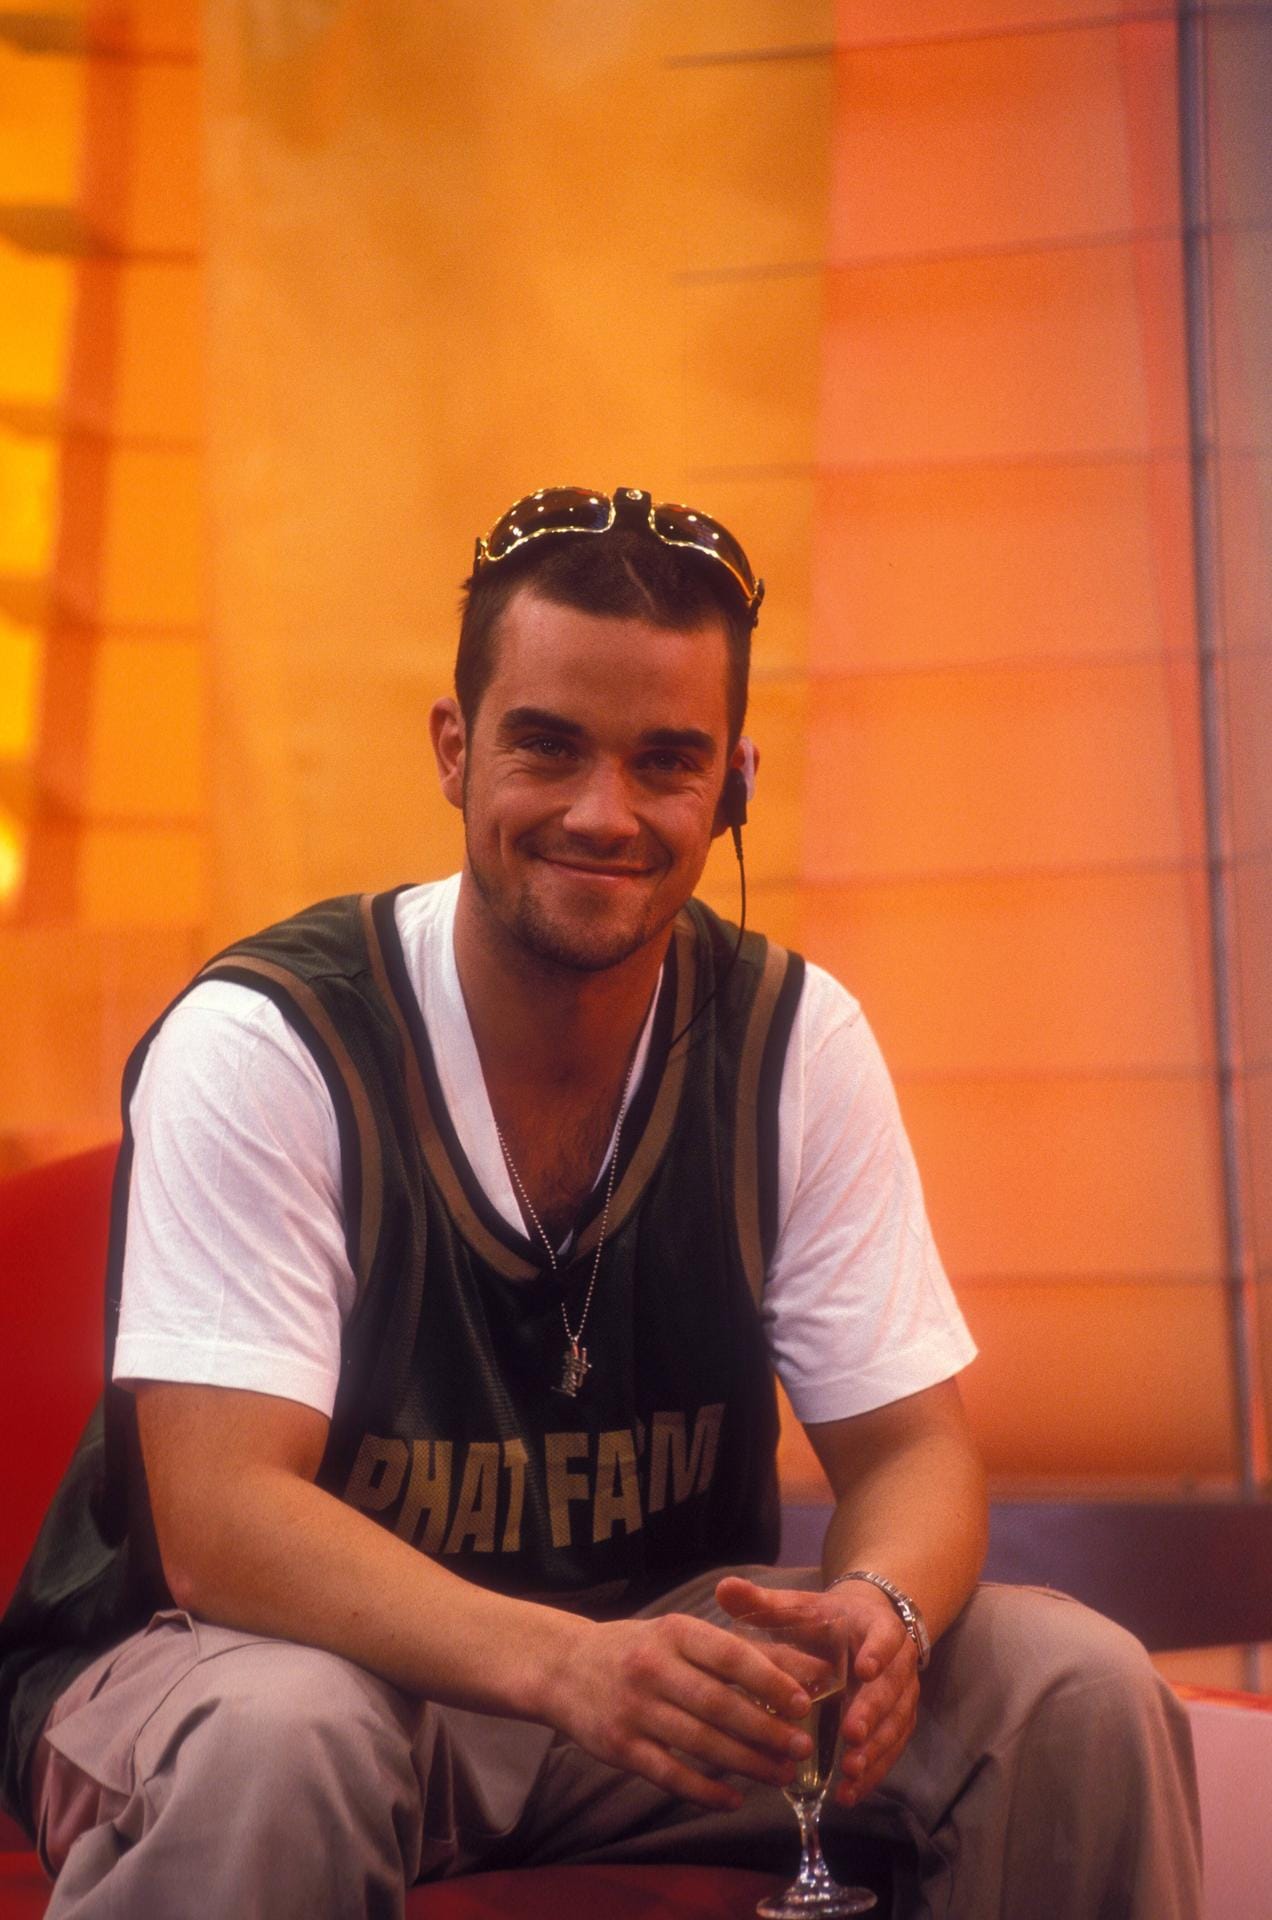 Immer ein verschmitztes Lächeln im Gesicht: Robbie Williams hat Take That im Jahr 1995 nach Drogen- und Partyexzessen verlassen.